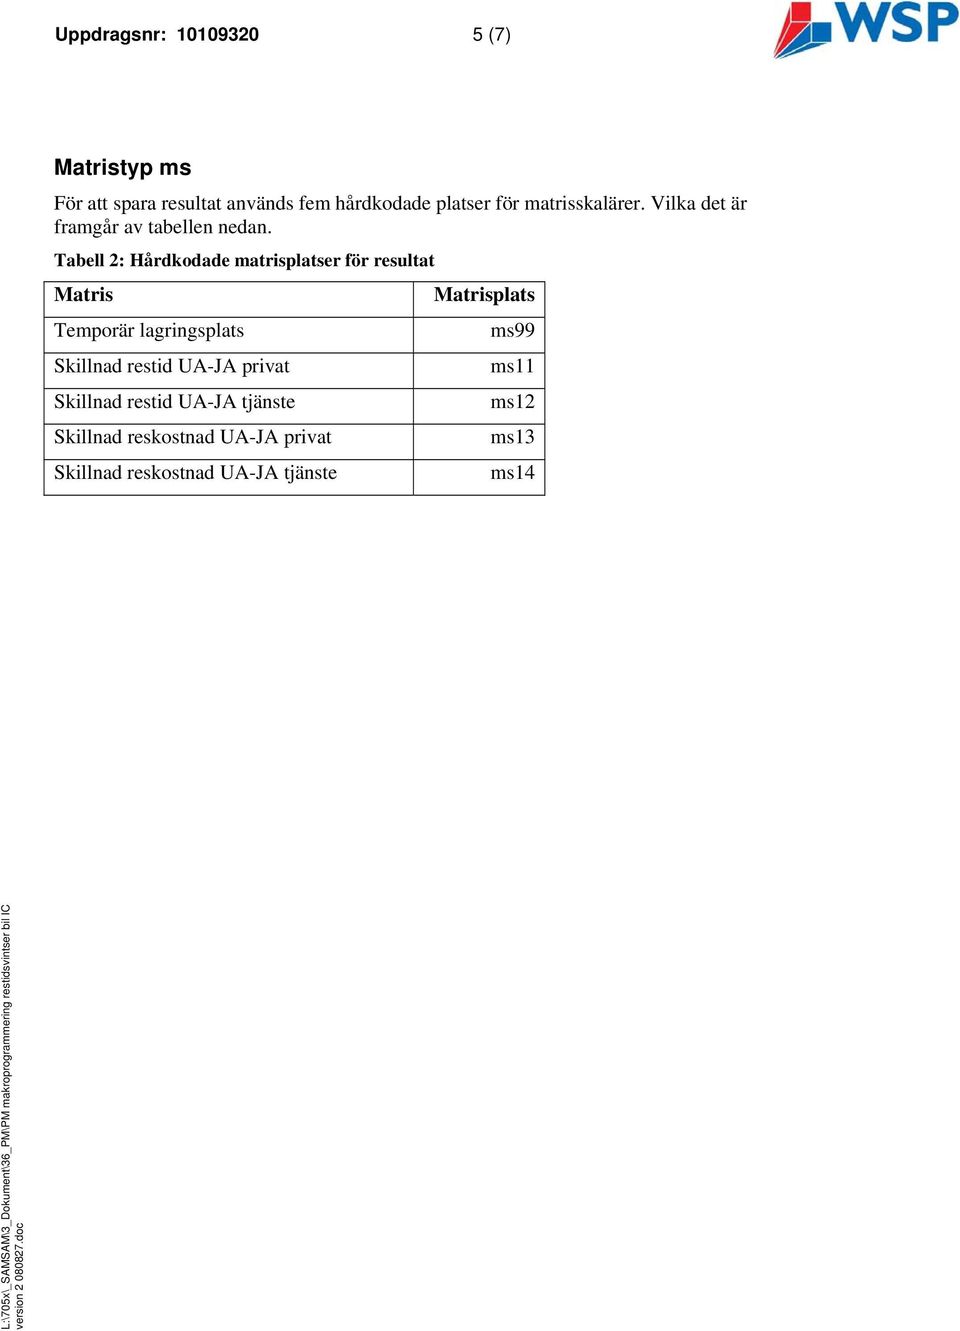 Tabell 2: Hårdkodade marisplaser för resula Maris Temporär lagrigsplas Skillad resid UA-JA priva Skillad resid